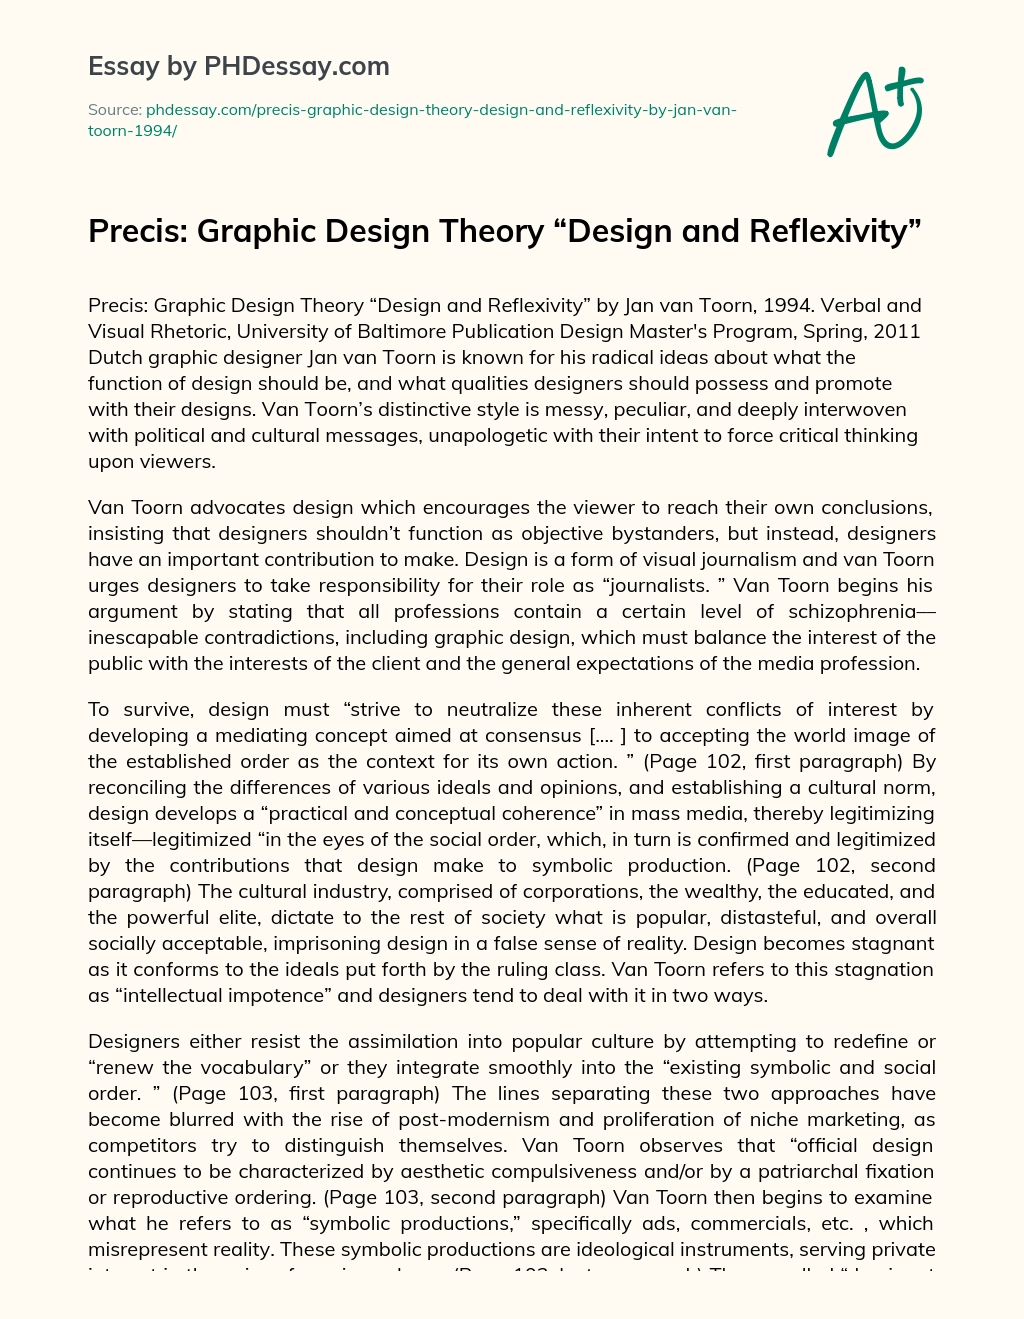 Precis: Graphic Design Theory “Design and Reflexivity” essay